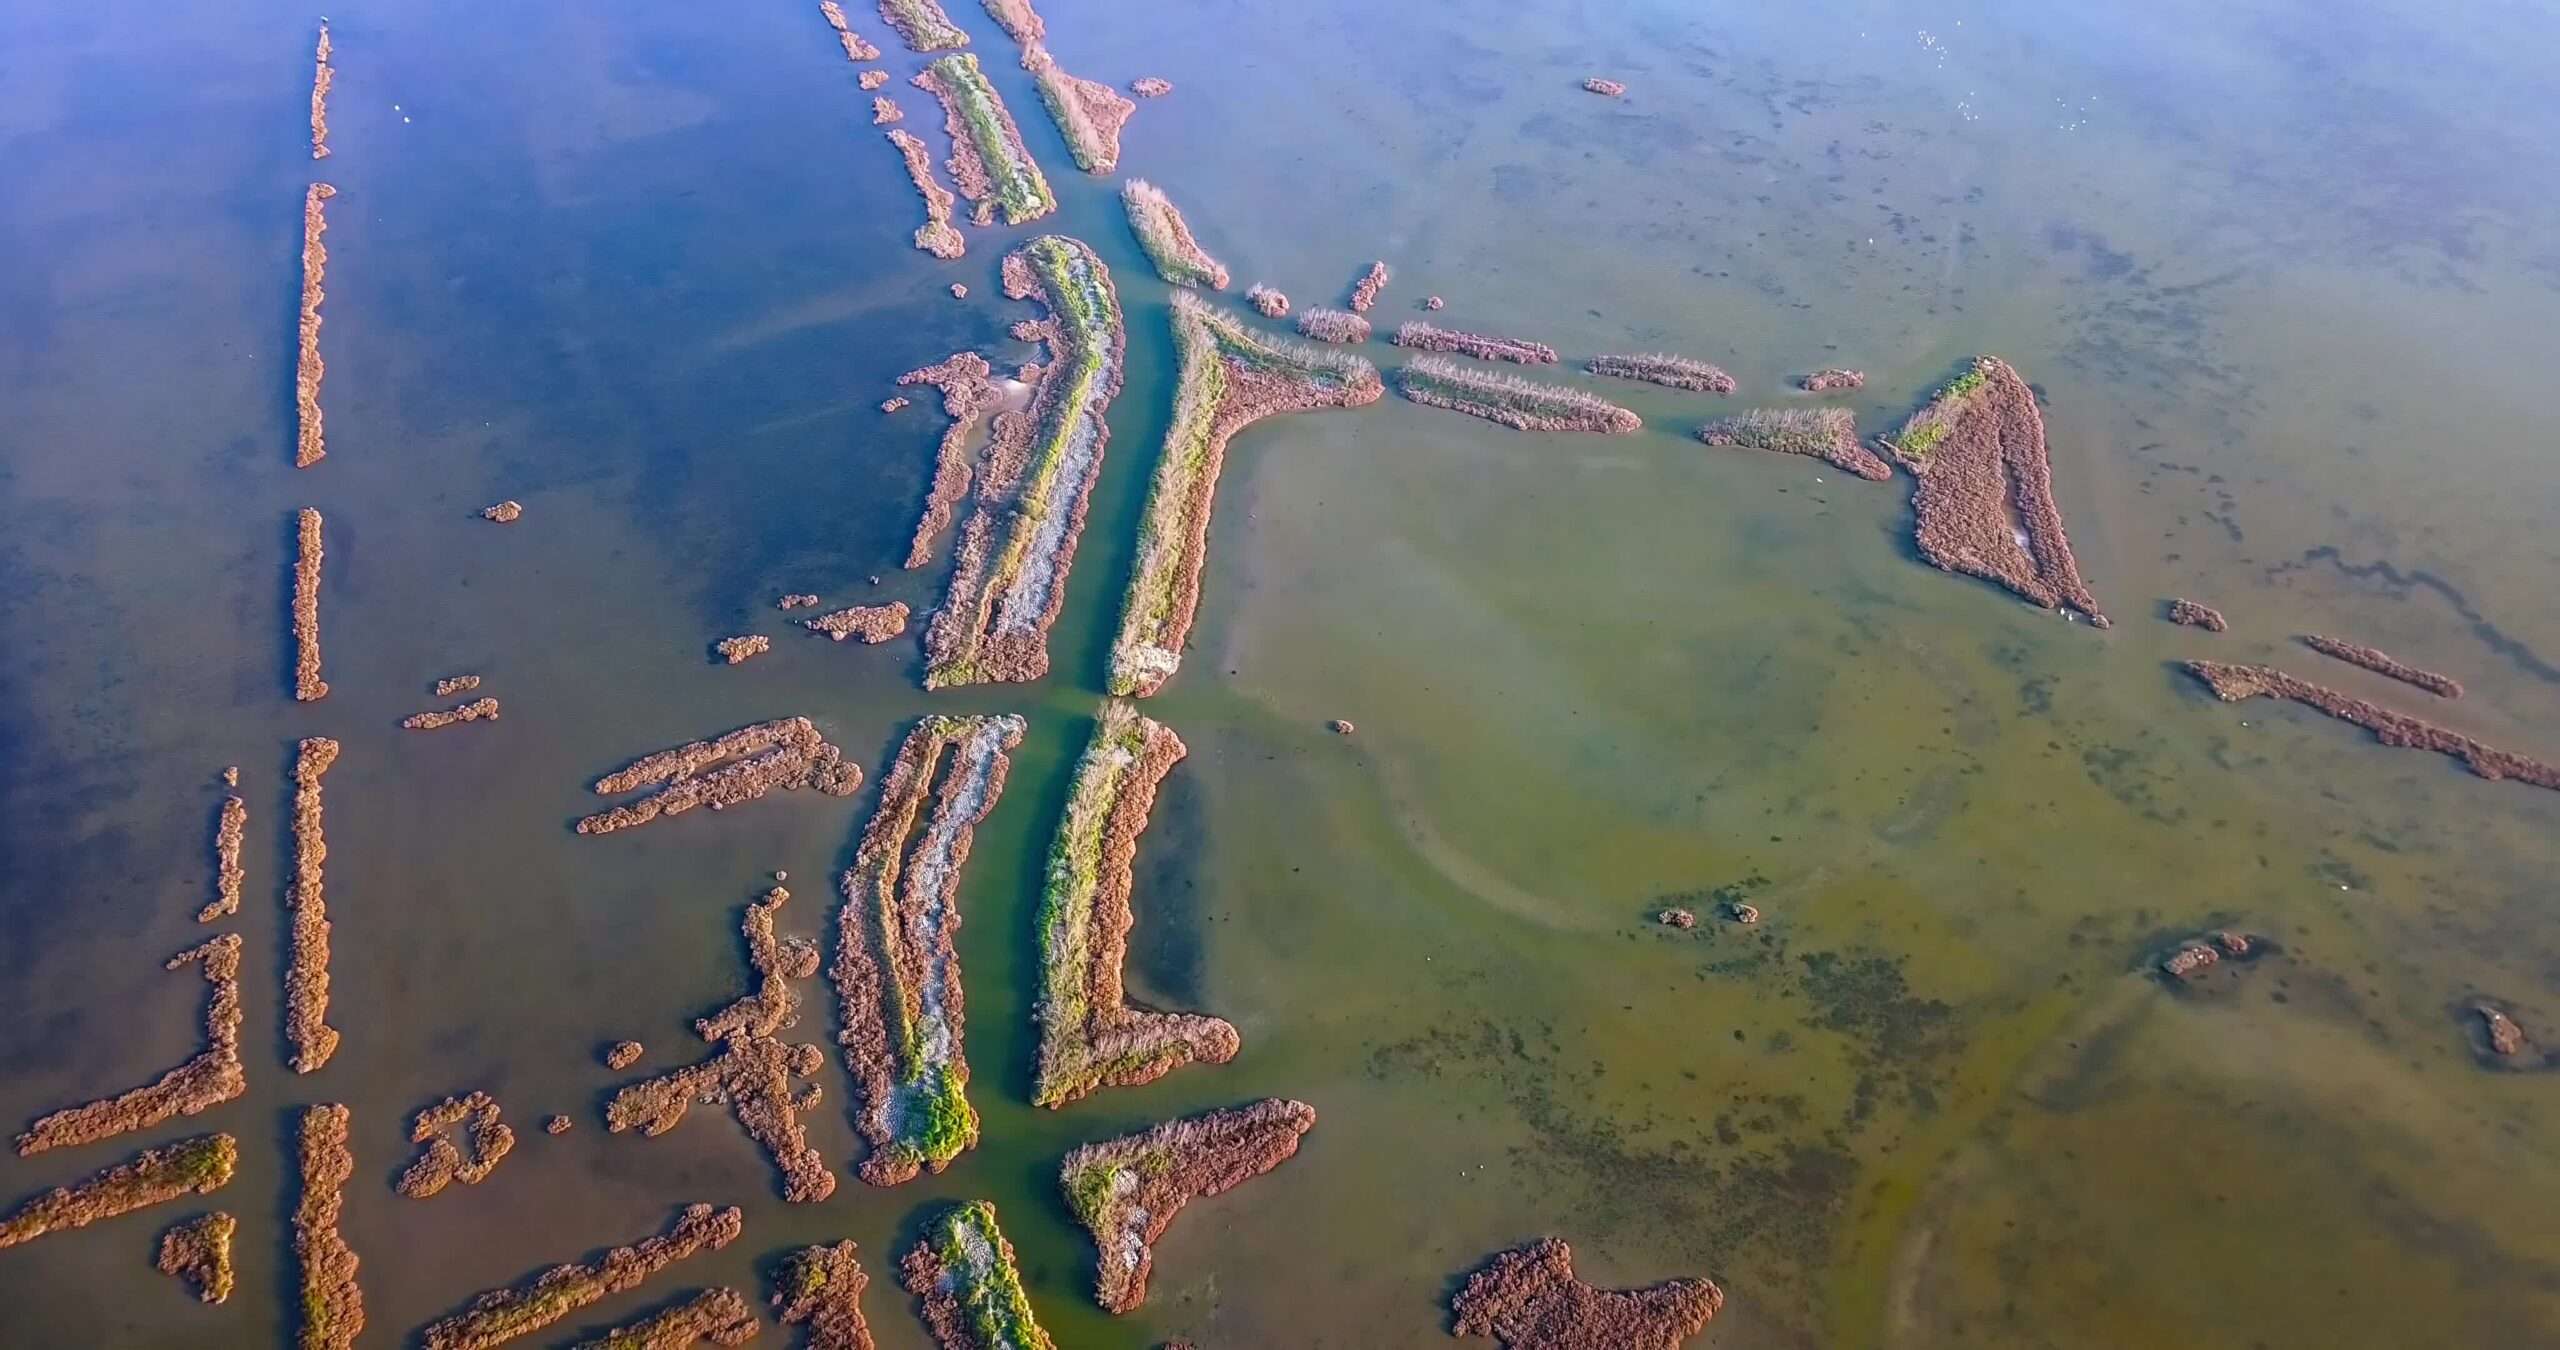 Paesaggio incontaminato di lagune verde-azzurre con strisce di terra